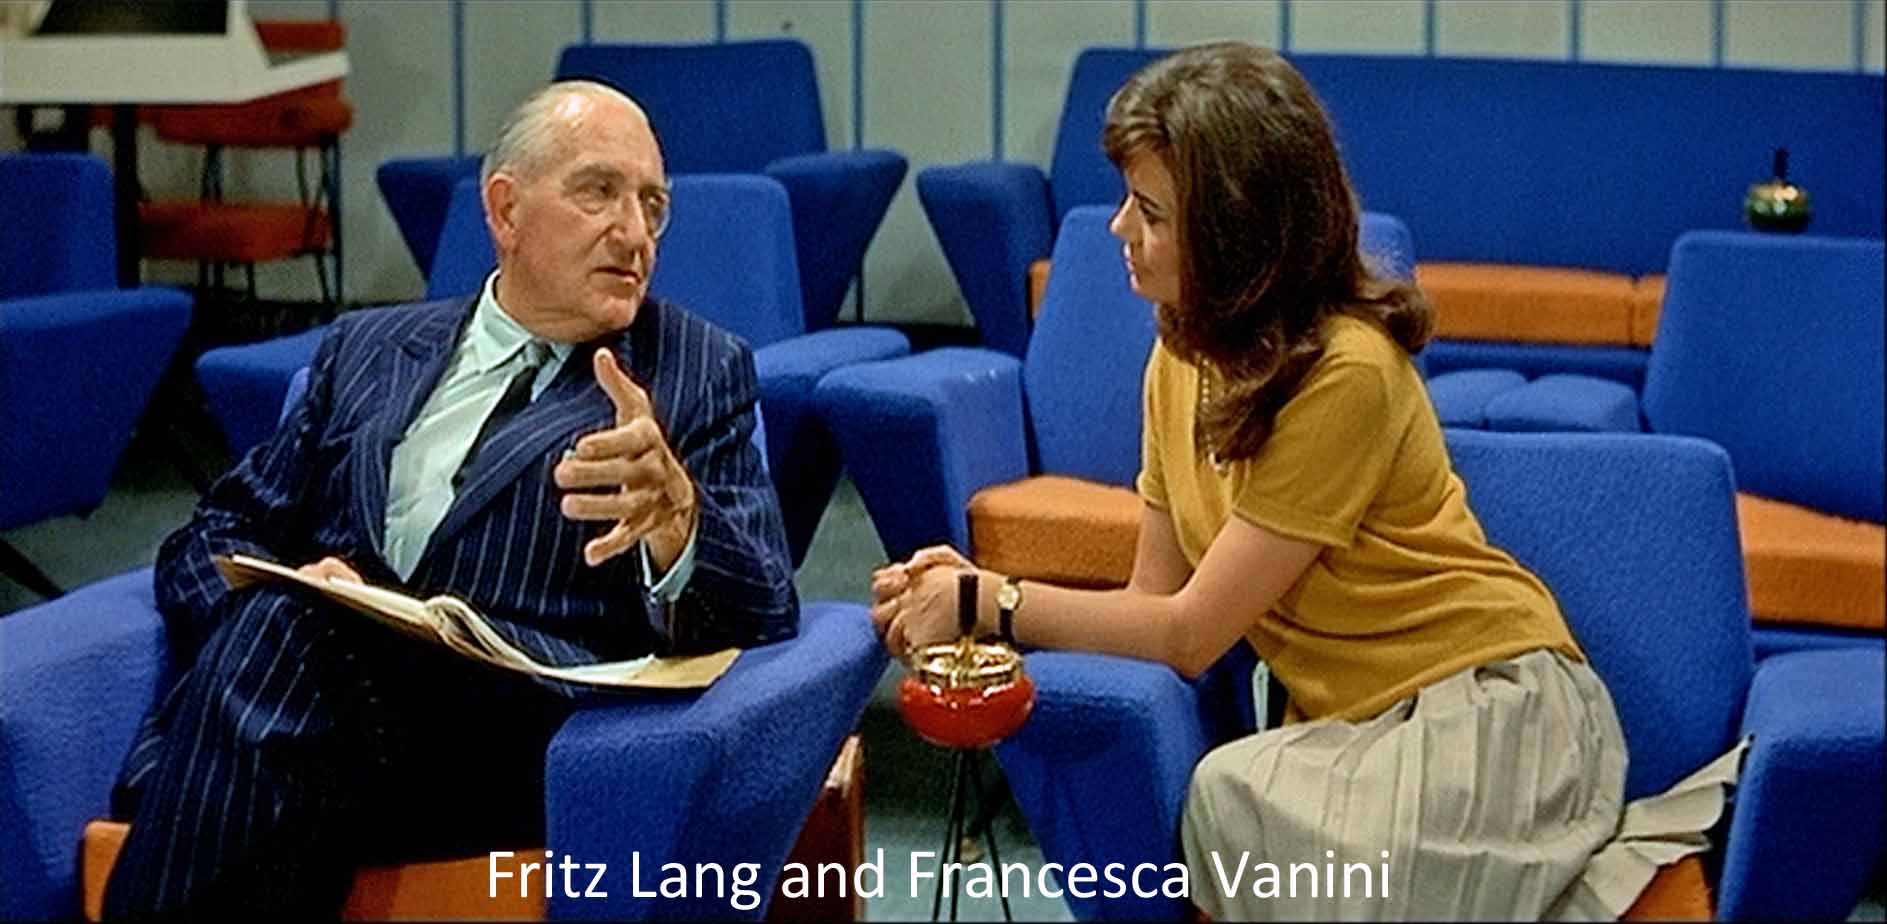 Fritz Lang and Francesca Vanini